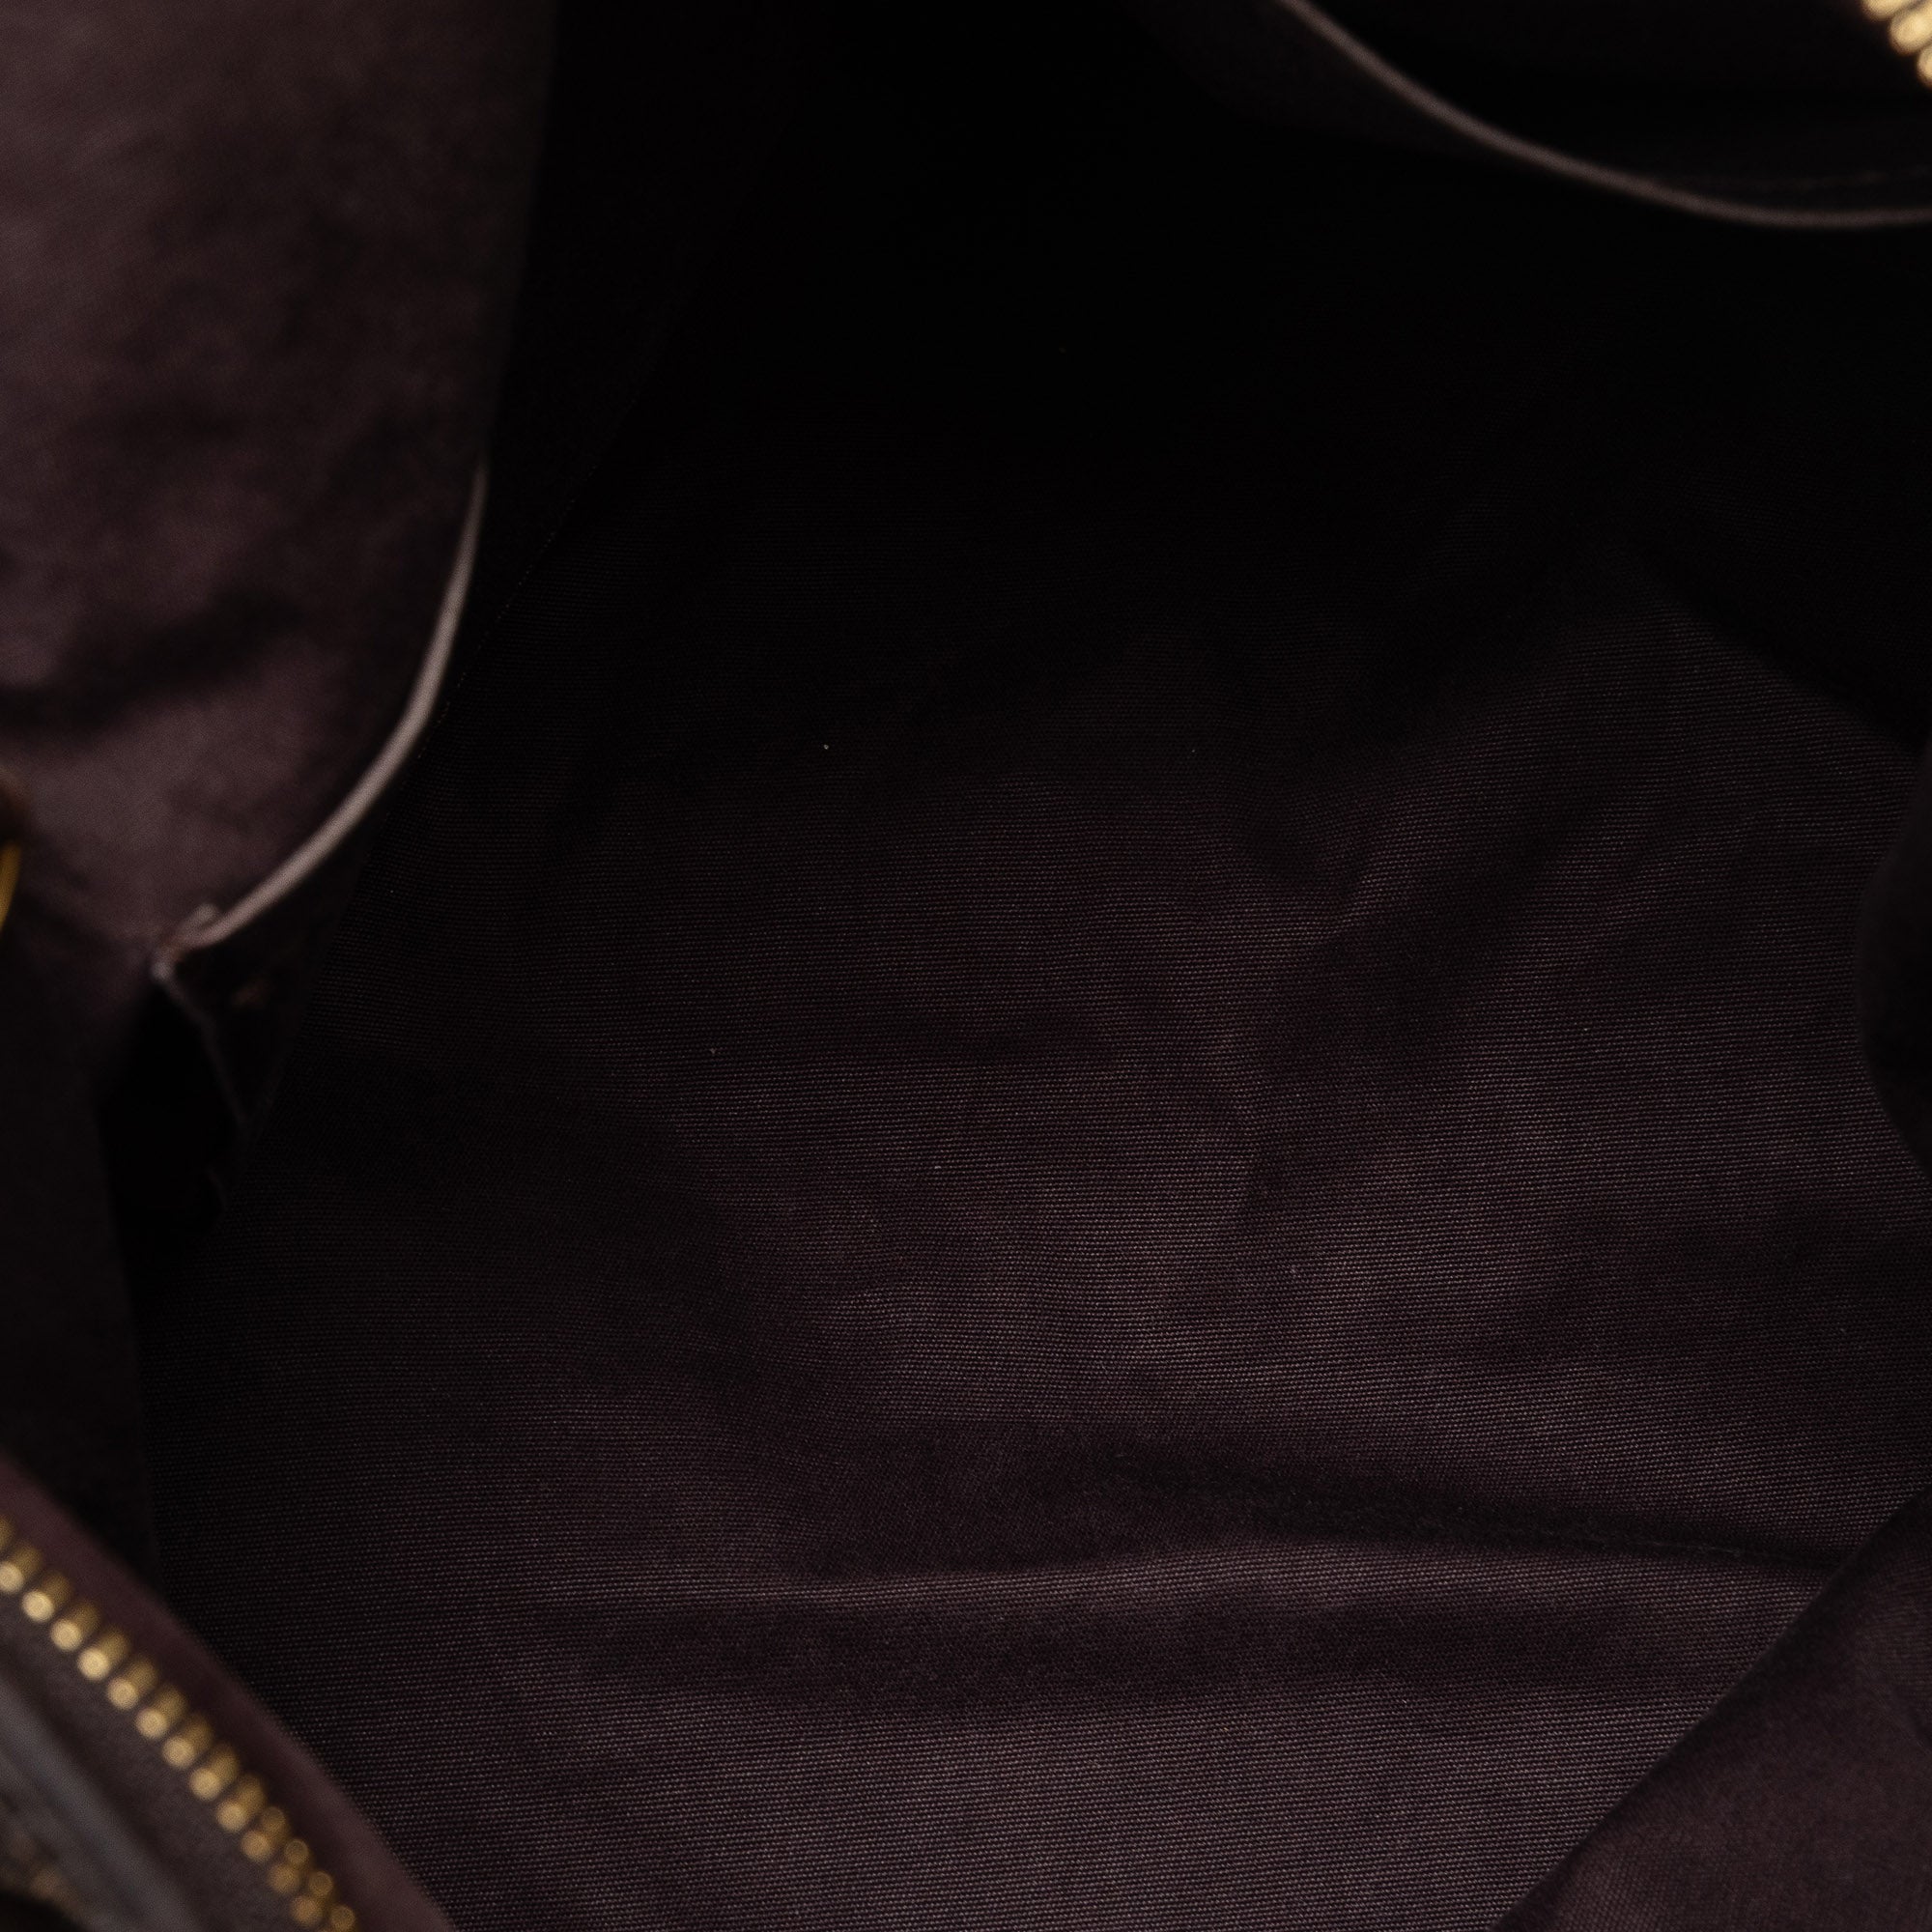 La valorización de los bolsos Louis Vuitton Carryall de segunda mano